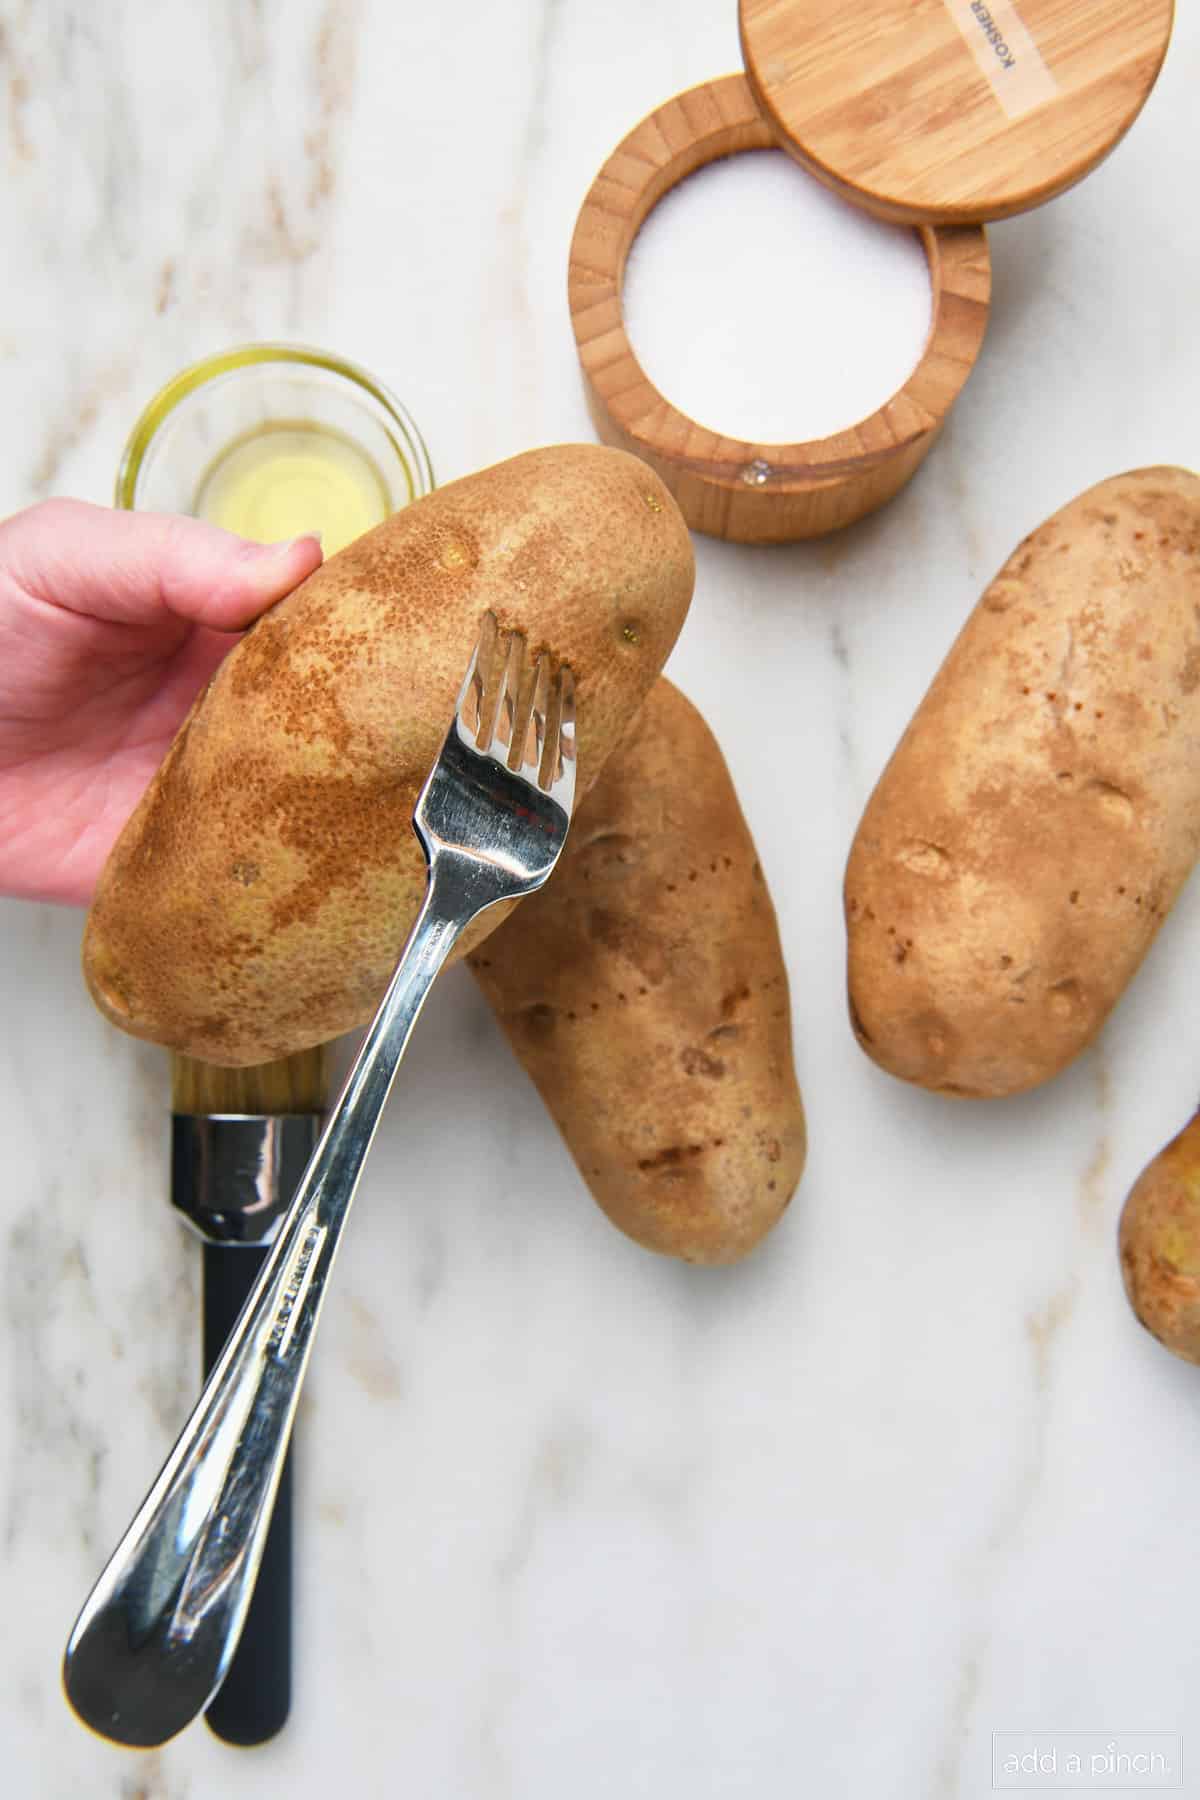 Fork pricking potatoes.